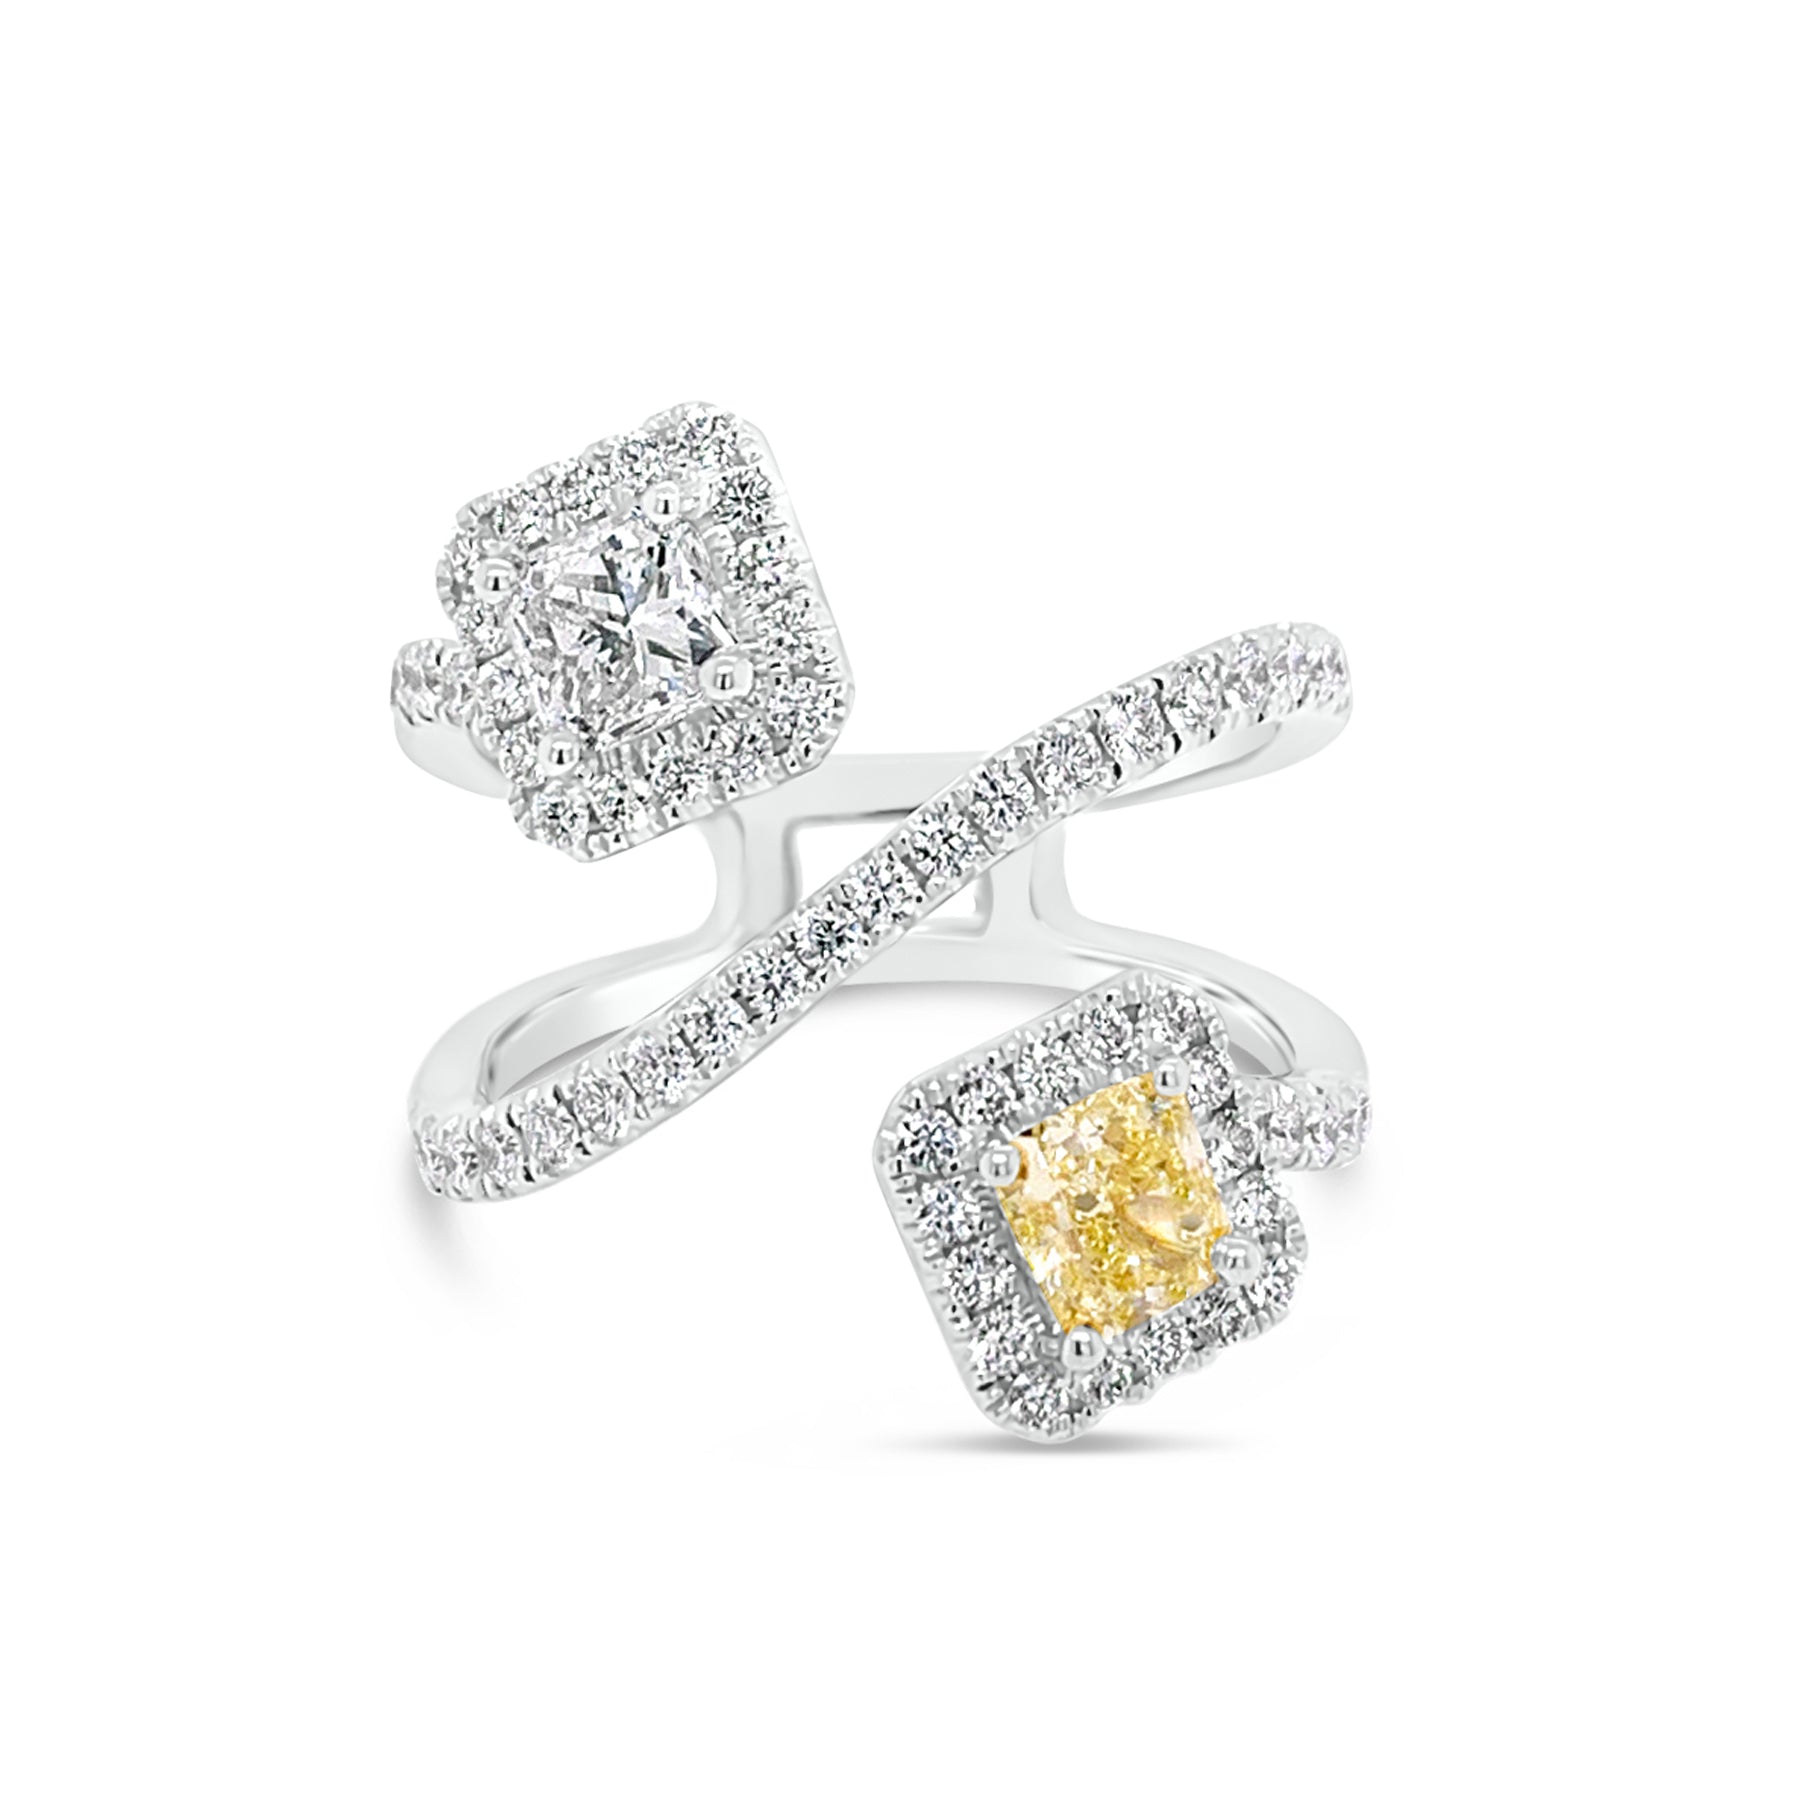 Yellow Diamond Wrap Ring   -18K gold weighing 5.85 grams  -62 round diamonds totaling 0.62 carats